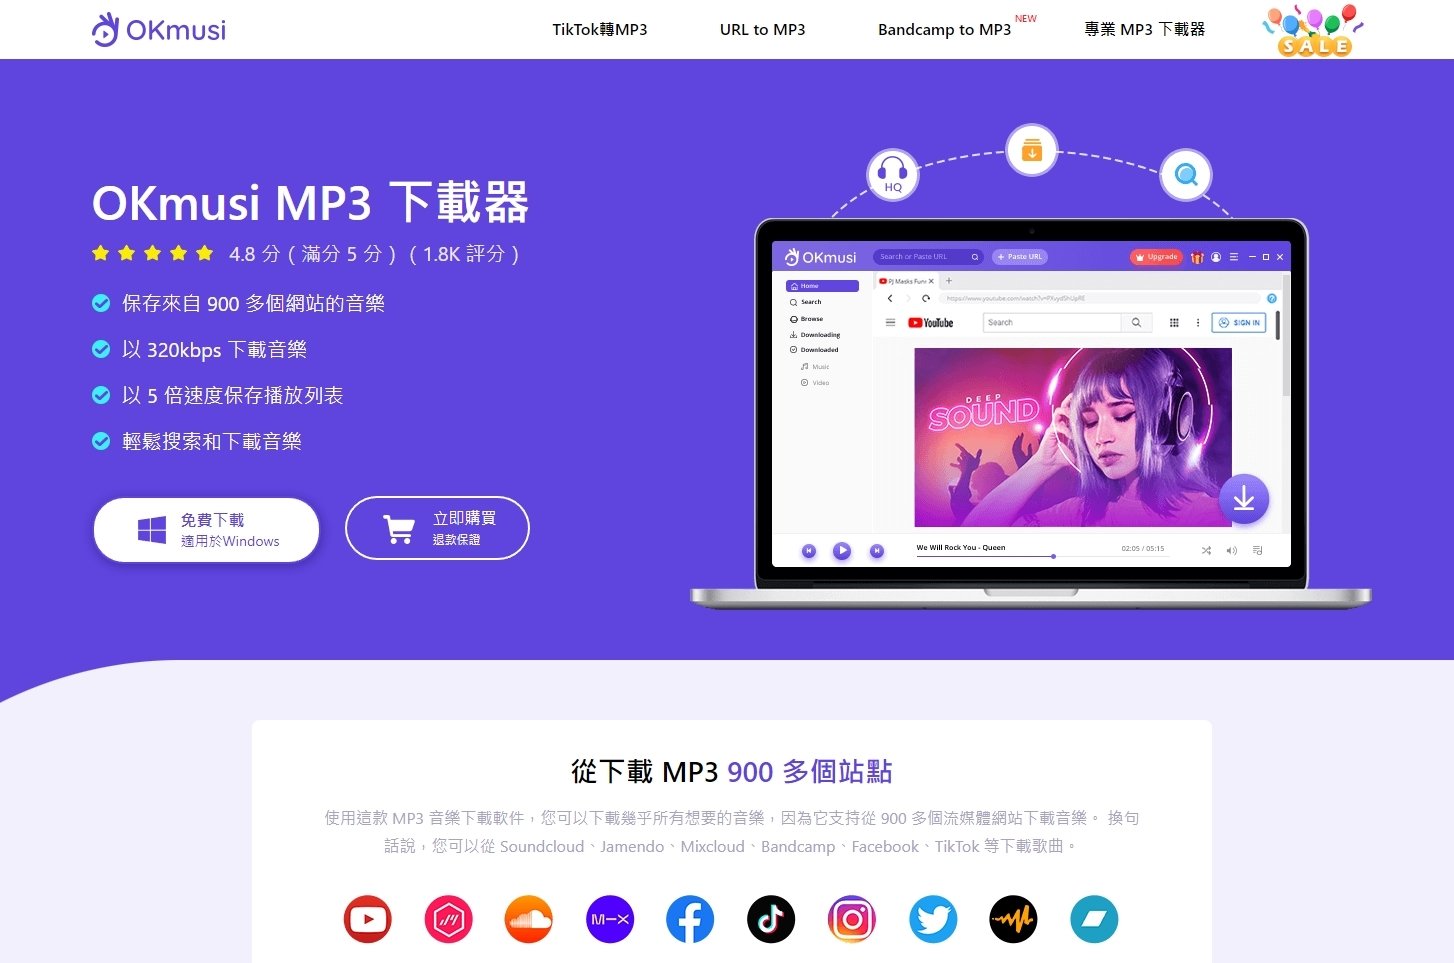 【限時活動】OKmusi MP3 Downloader Pro 1年免費序號活動，下載Youtube影音檔超方便！